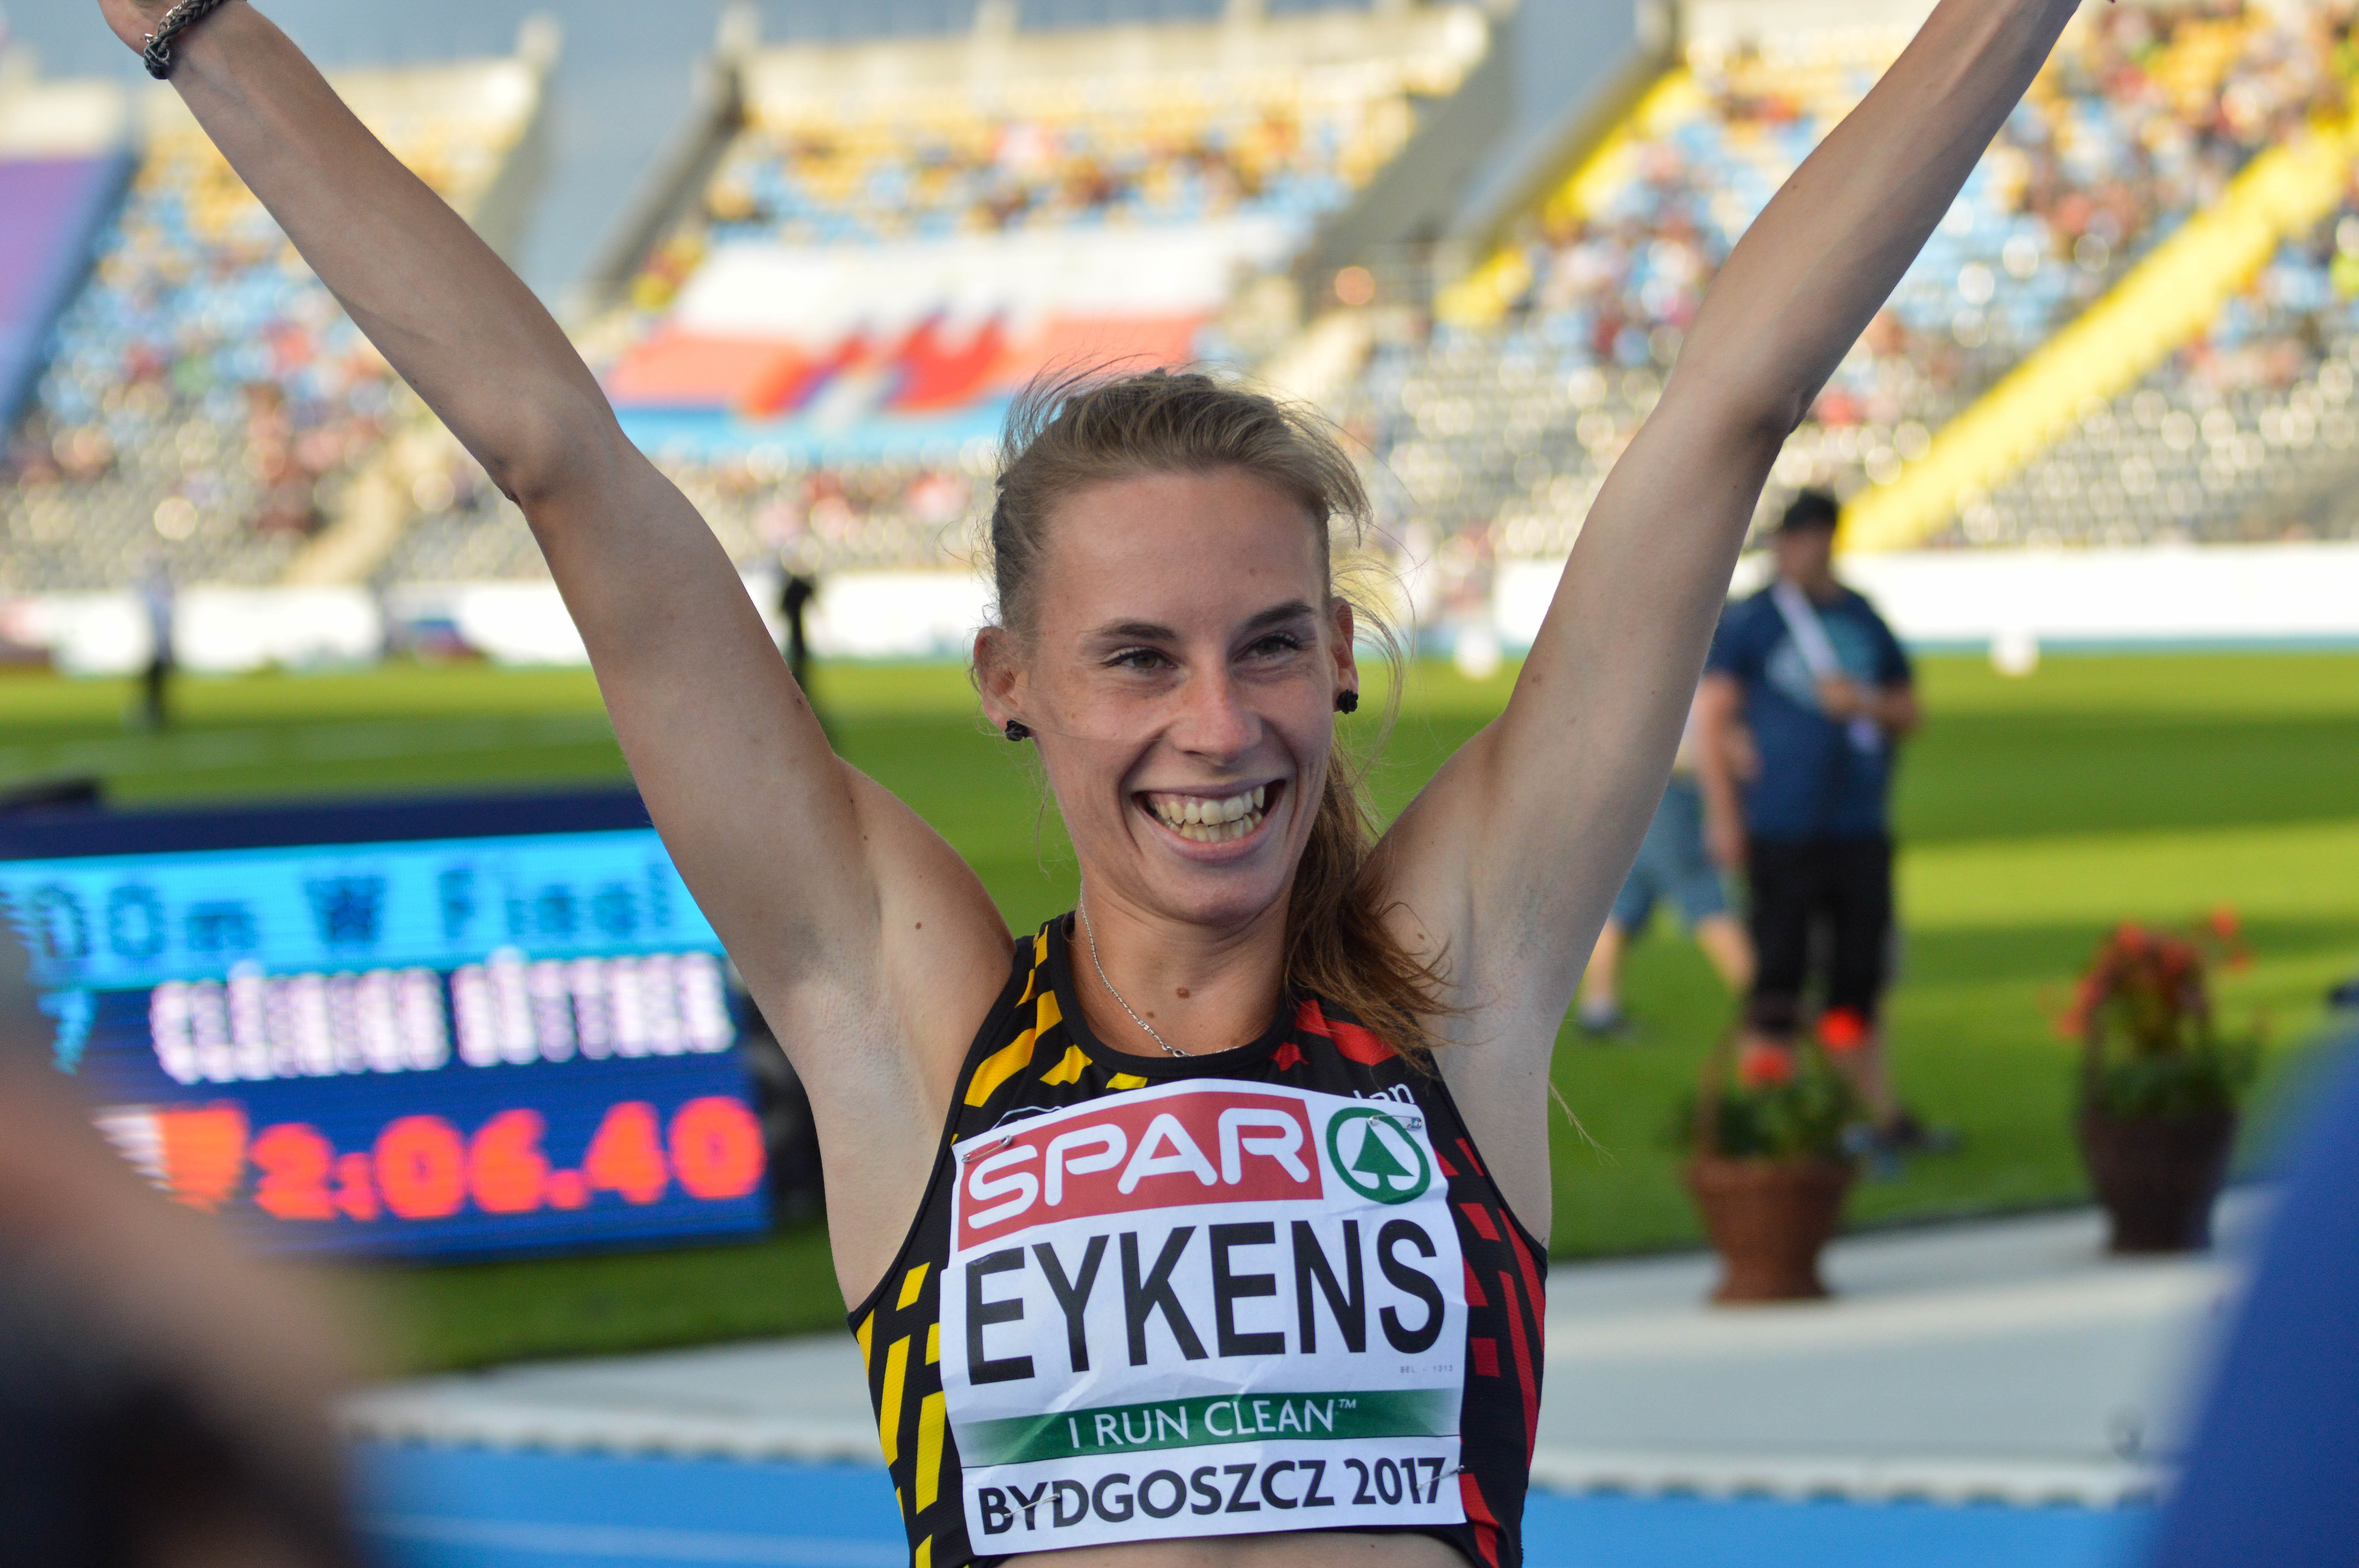 Renée Eykens 800m Bydgoszcz 2017